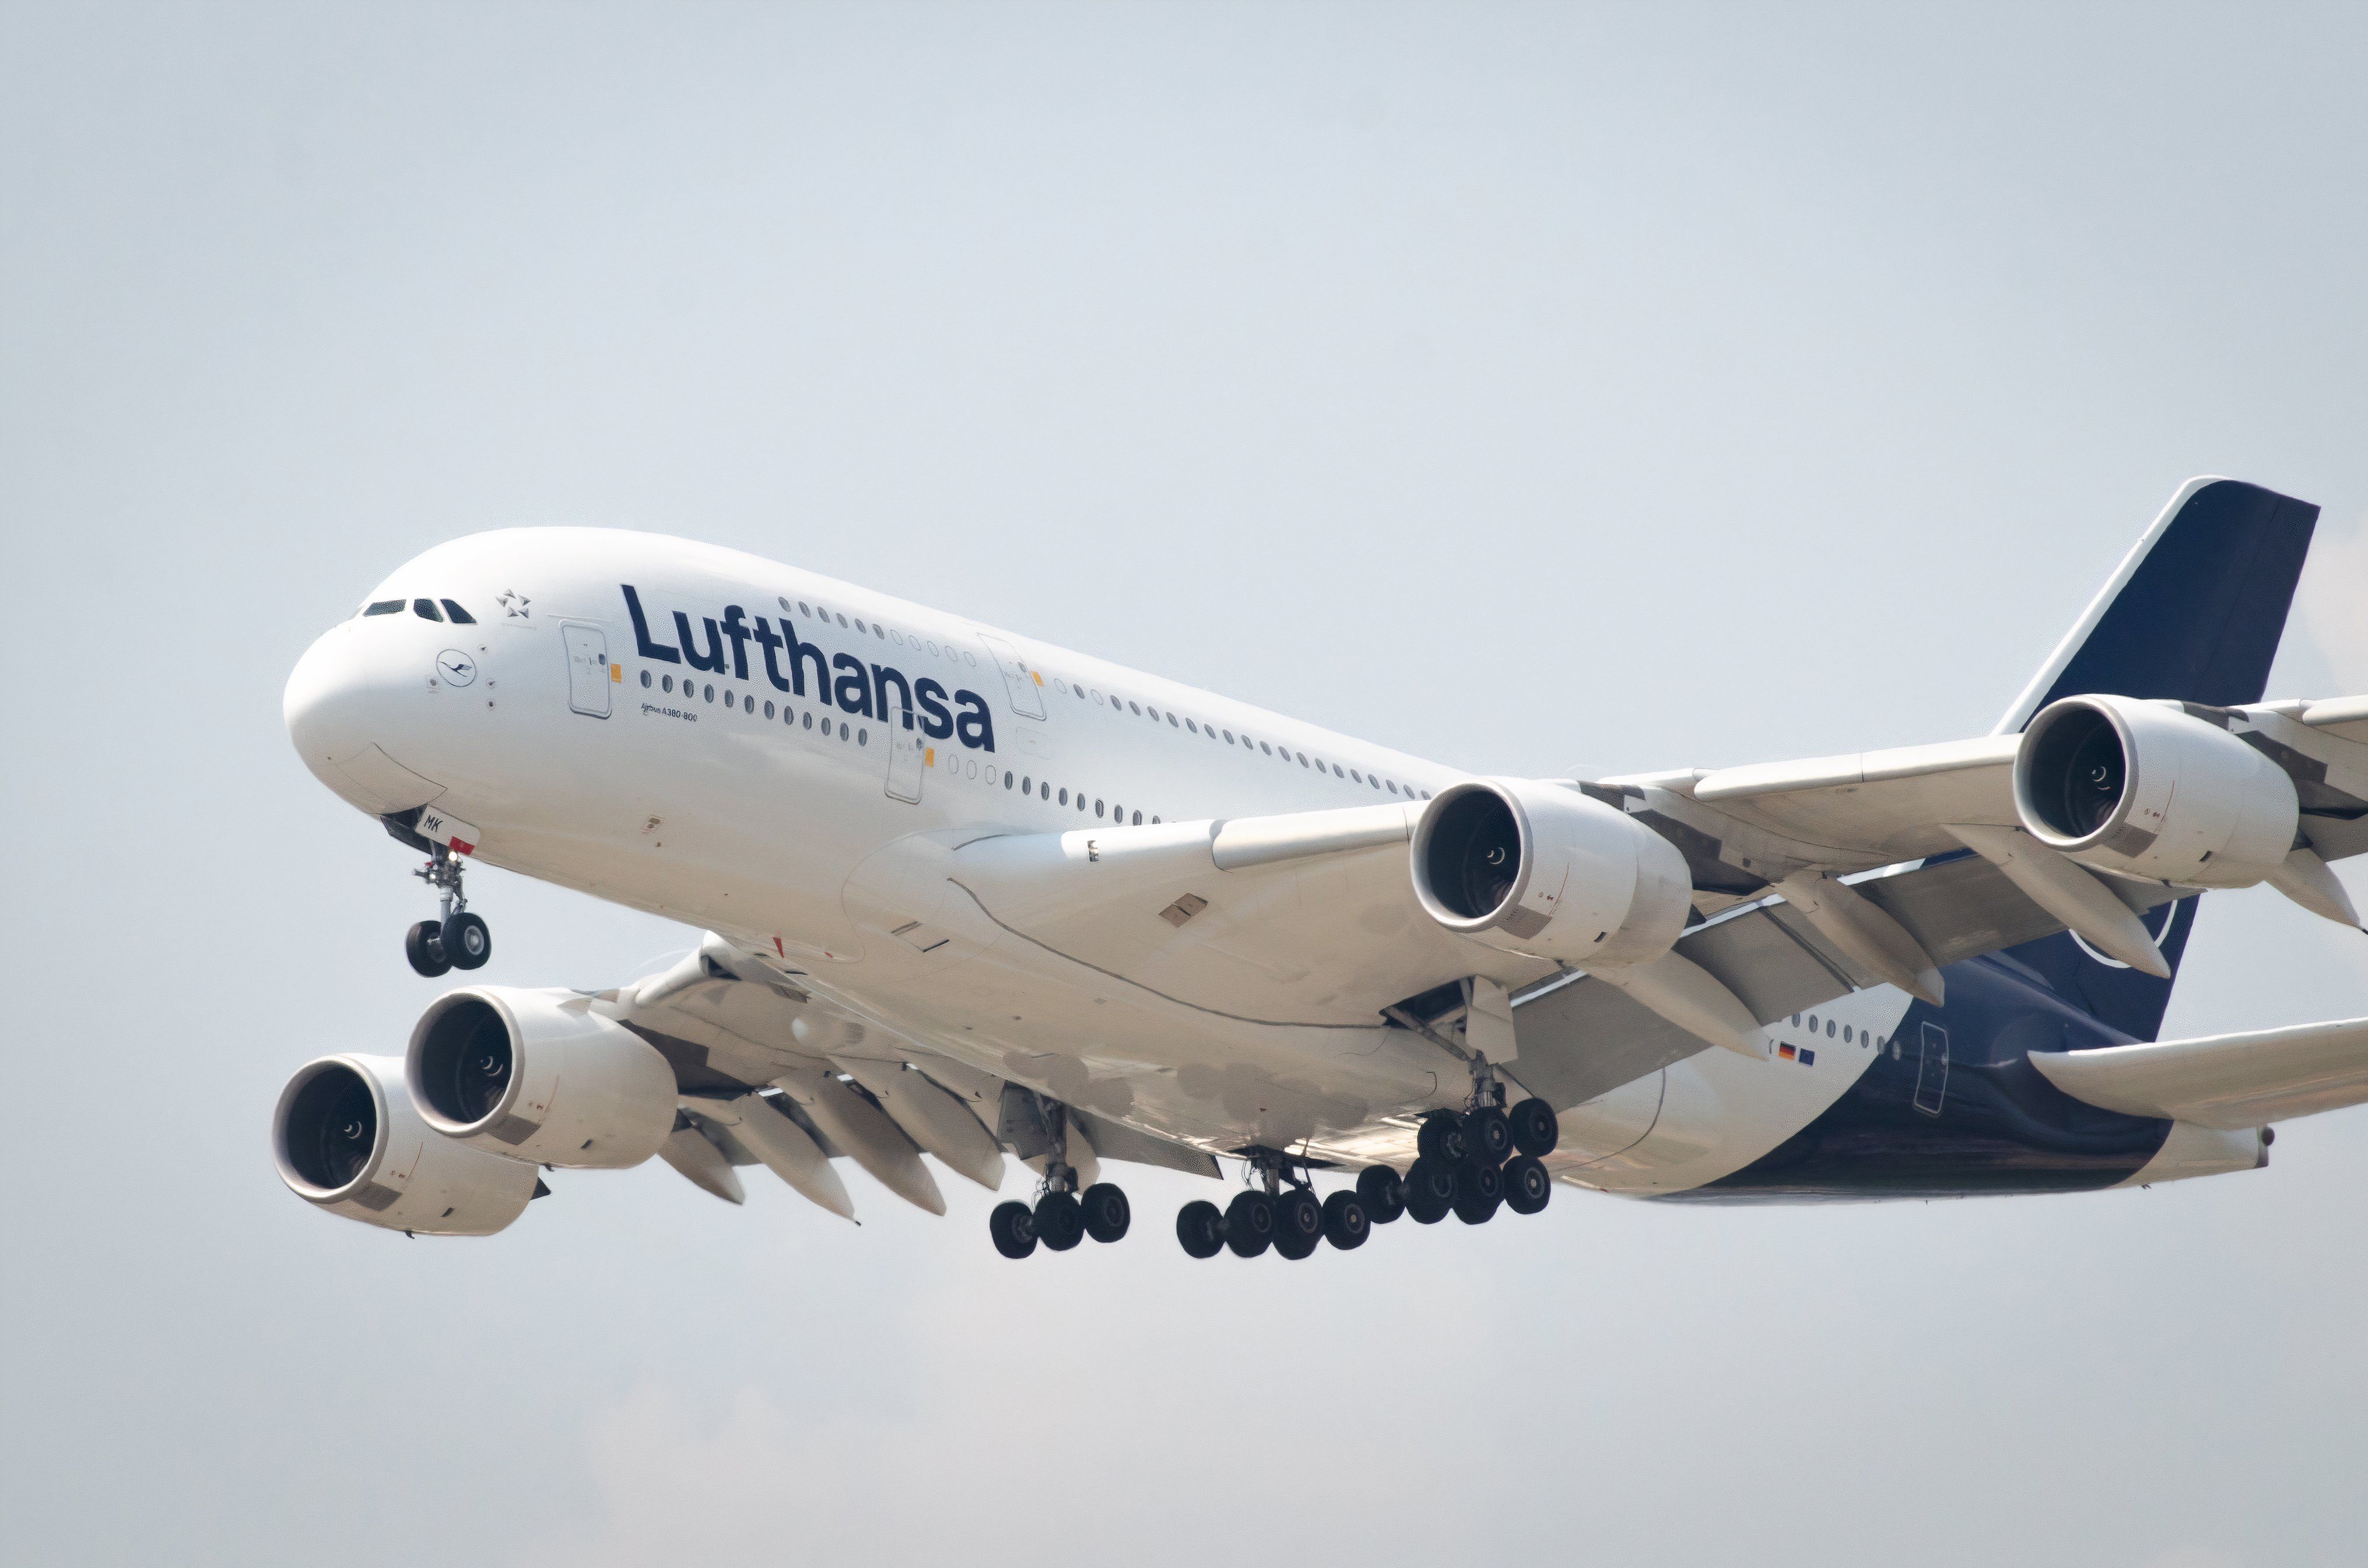 Lufthansa A380 on final approach shutterstock_2433149763